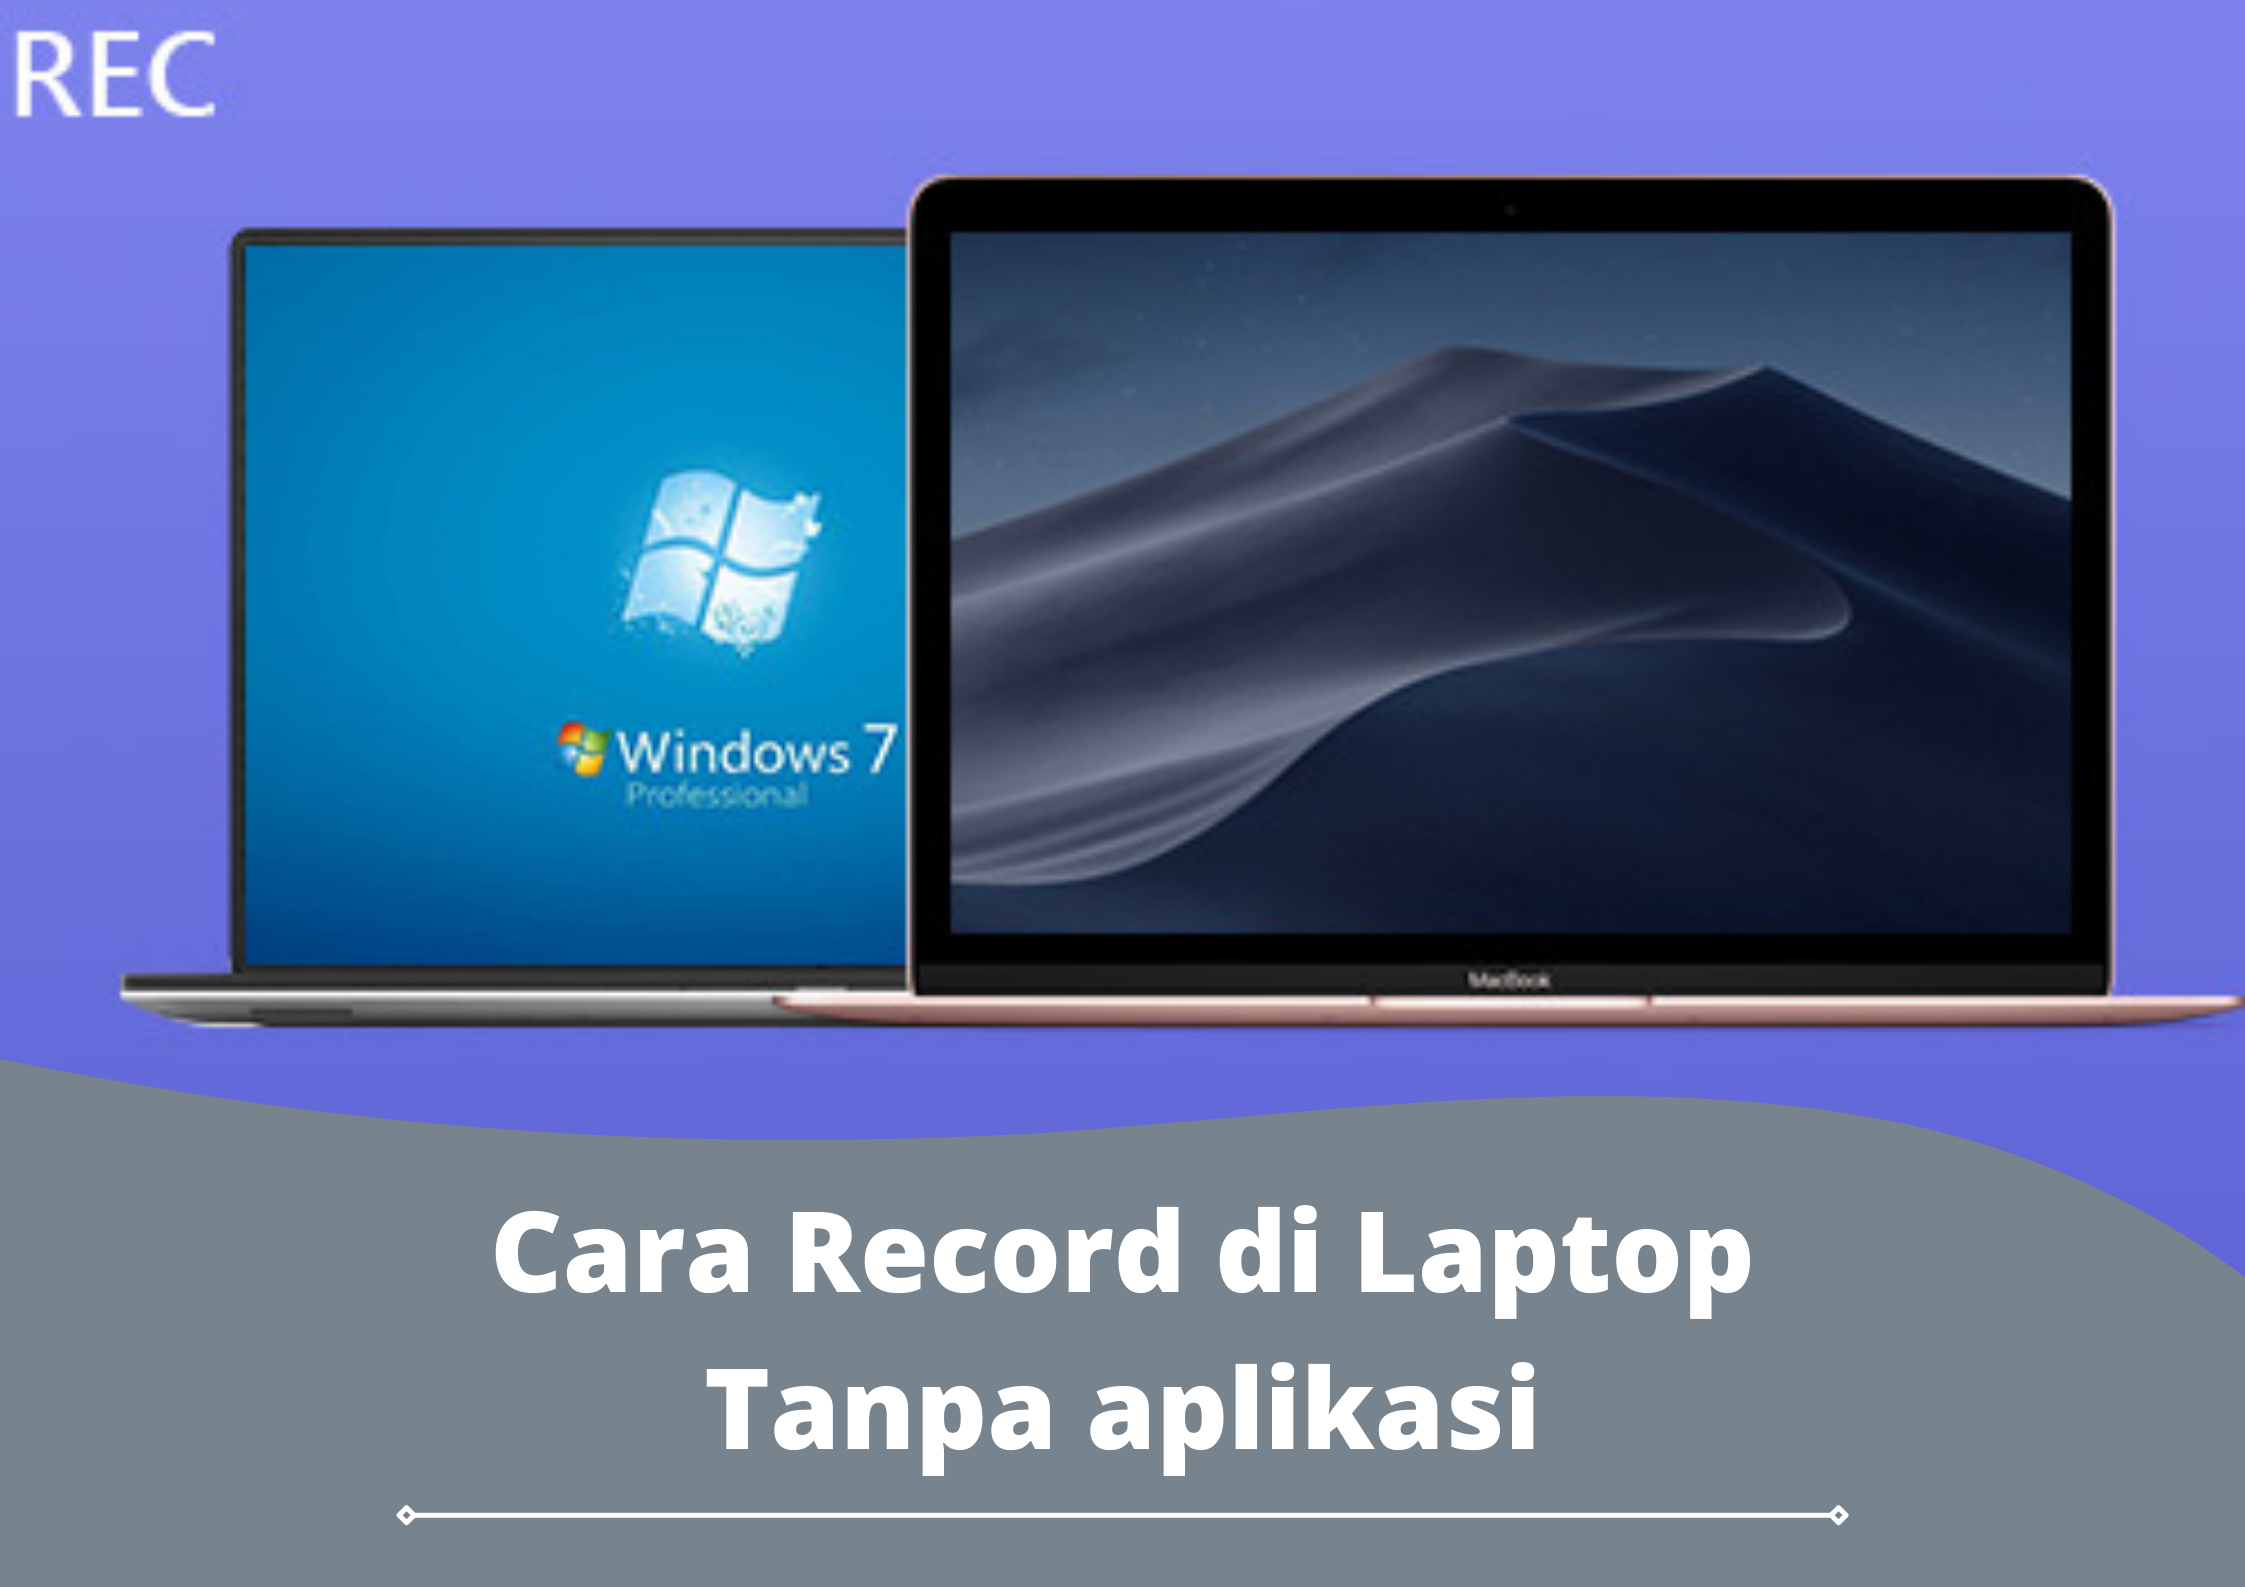 Cara Record di Laptop